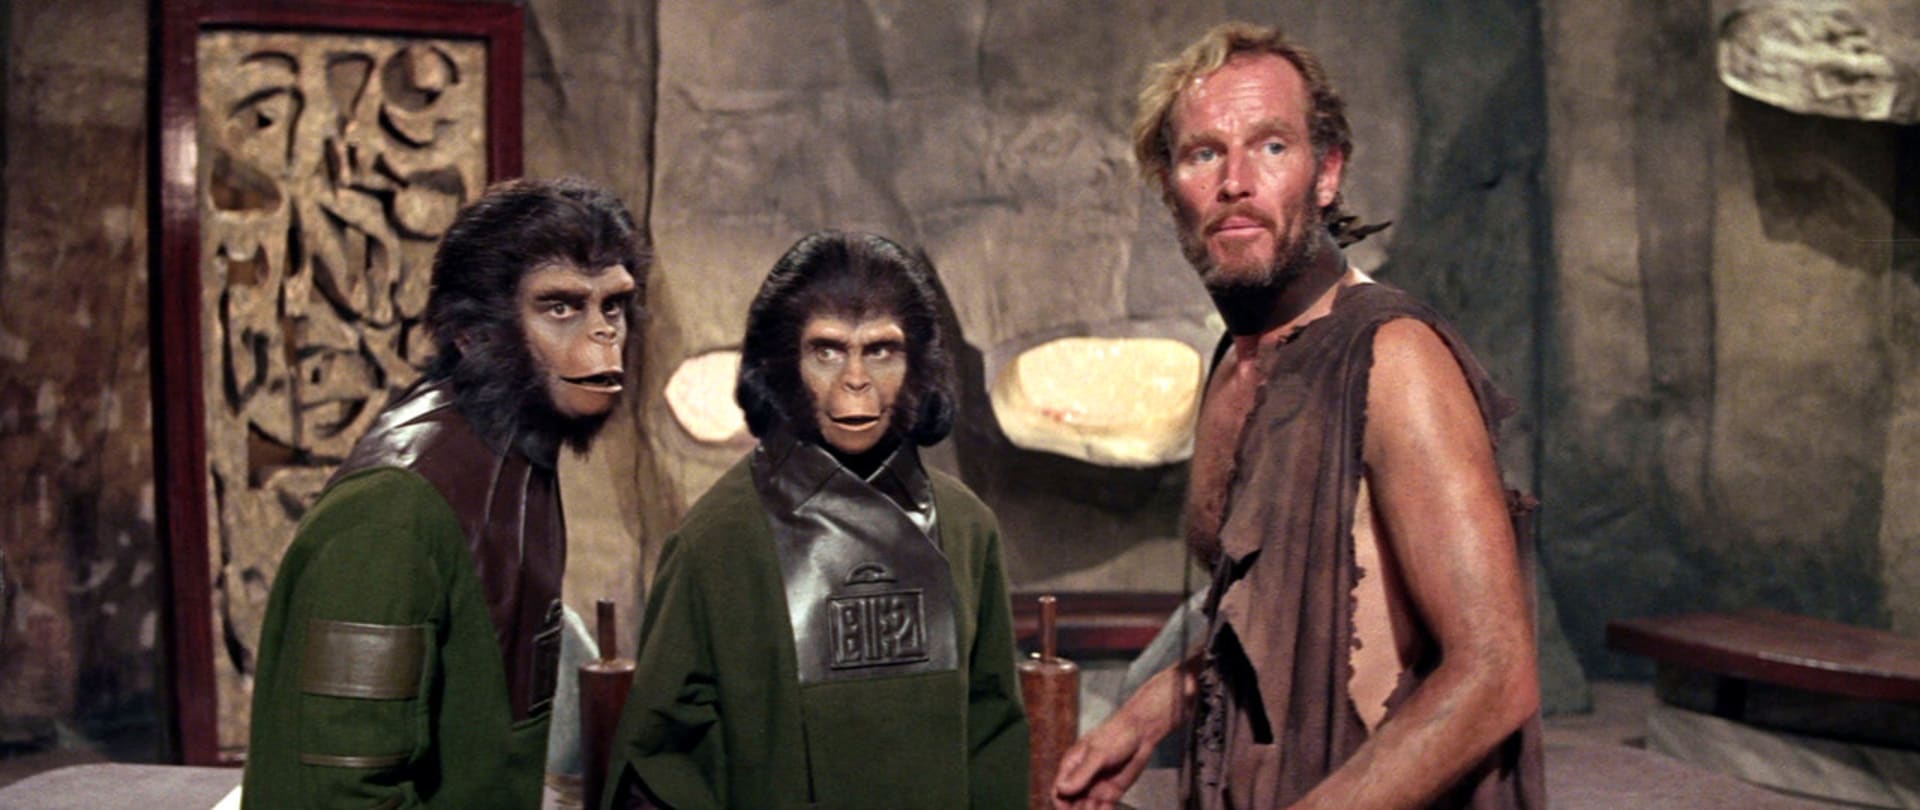 Navíc by intouš vedle opic mohl vypadat lépe než chlupáči. To se u Hestona nepoštěstí.